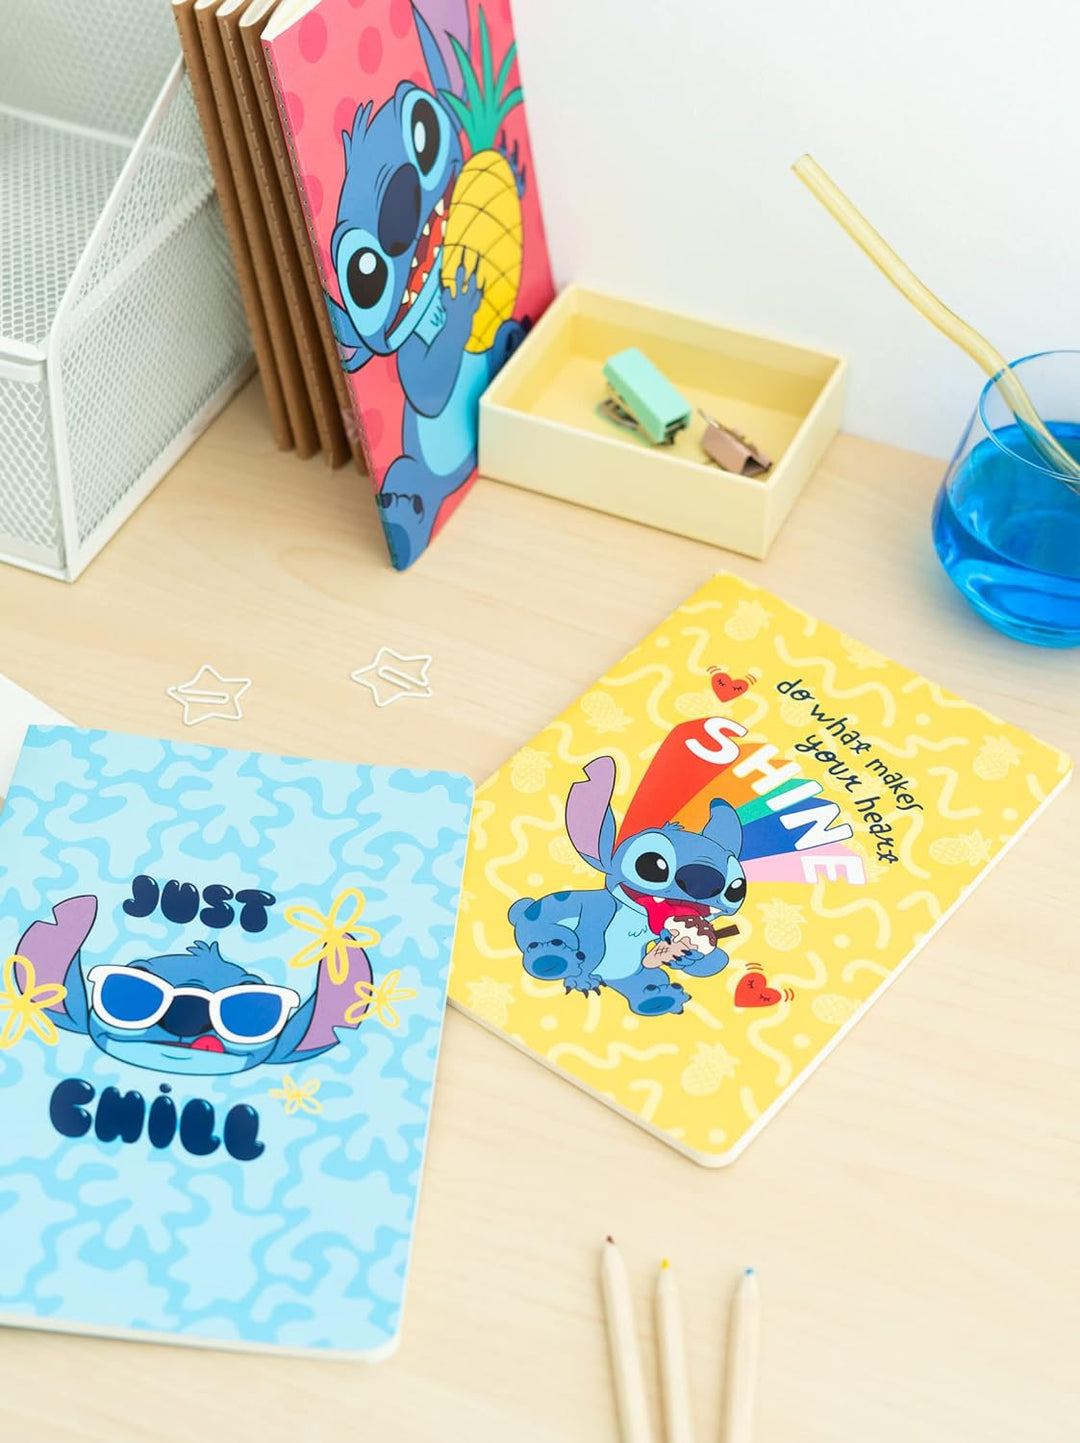 Grupo Erik Disney Stitch Tropical Pack Of 3 A5 Notebooks | A5 Notebook